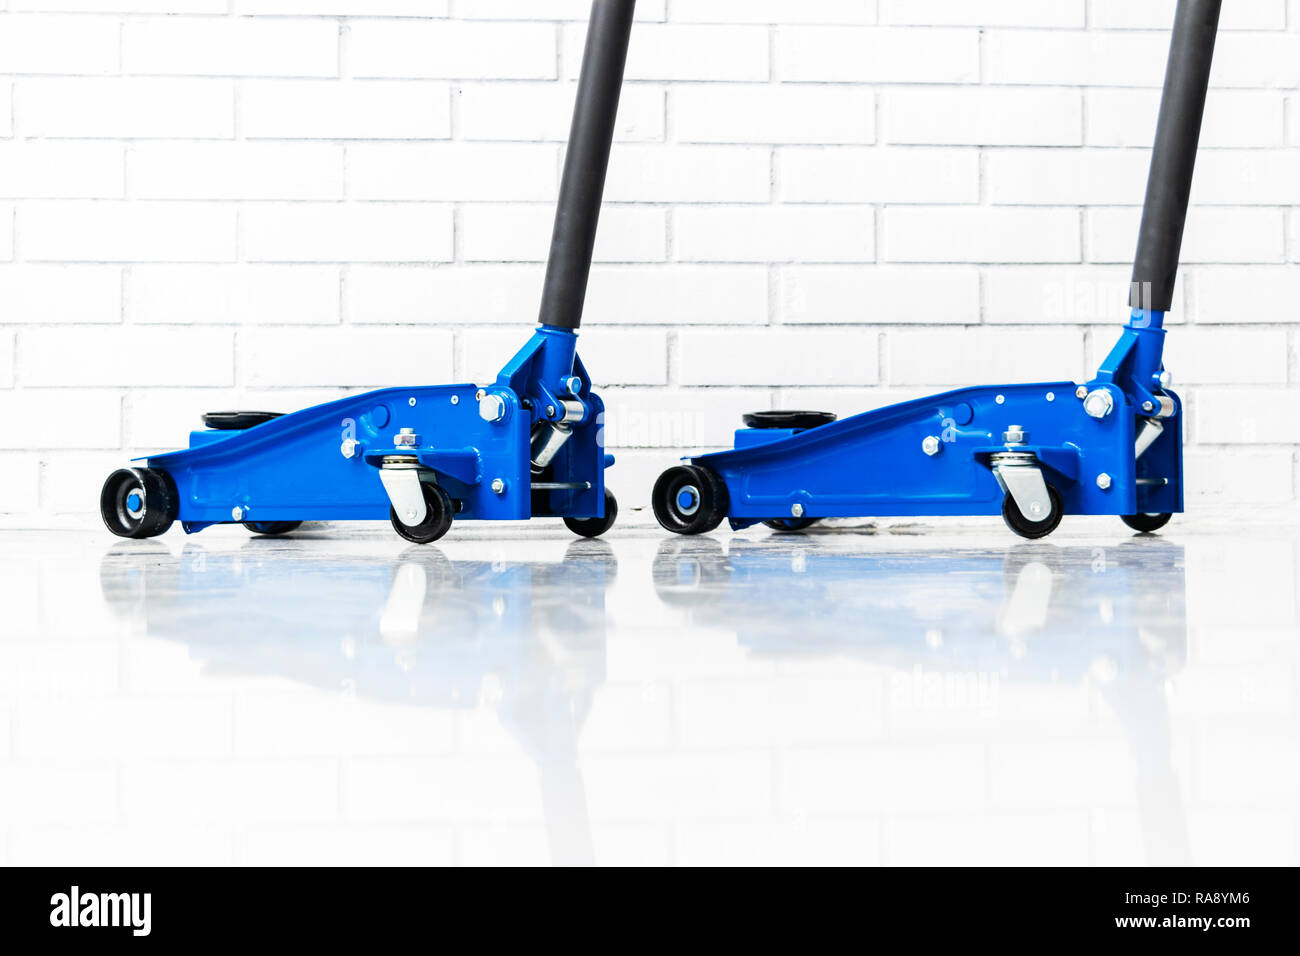 Hydraulic Car Floor Jacks Car Lift Blue Hydraulic Floor Jack For